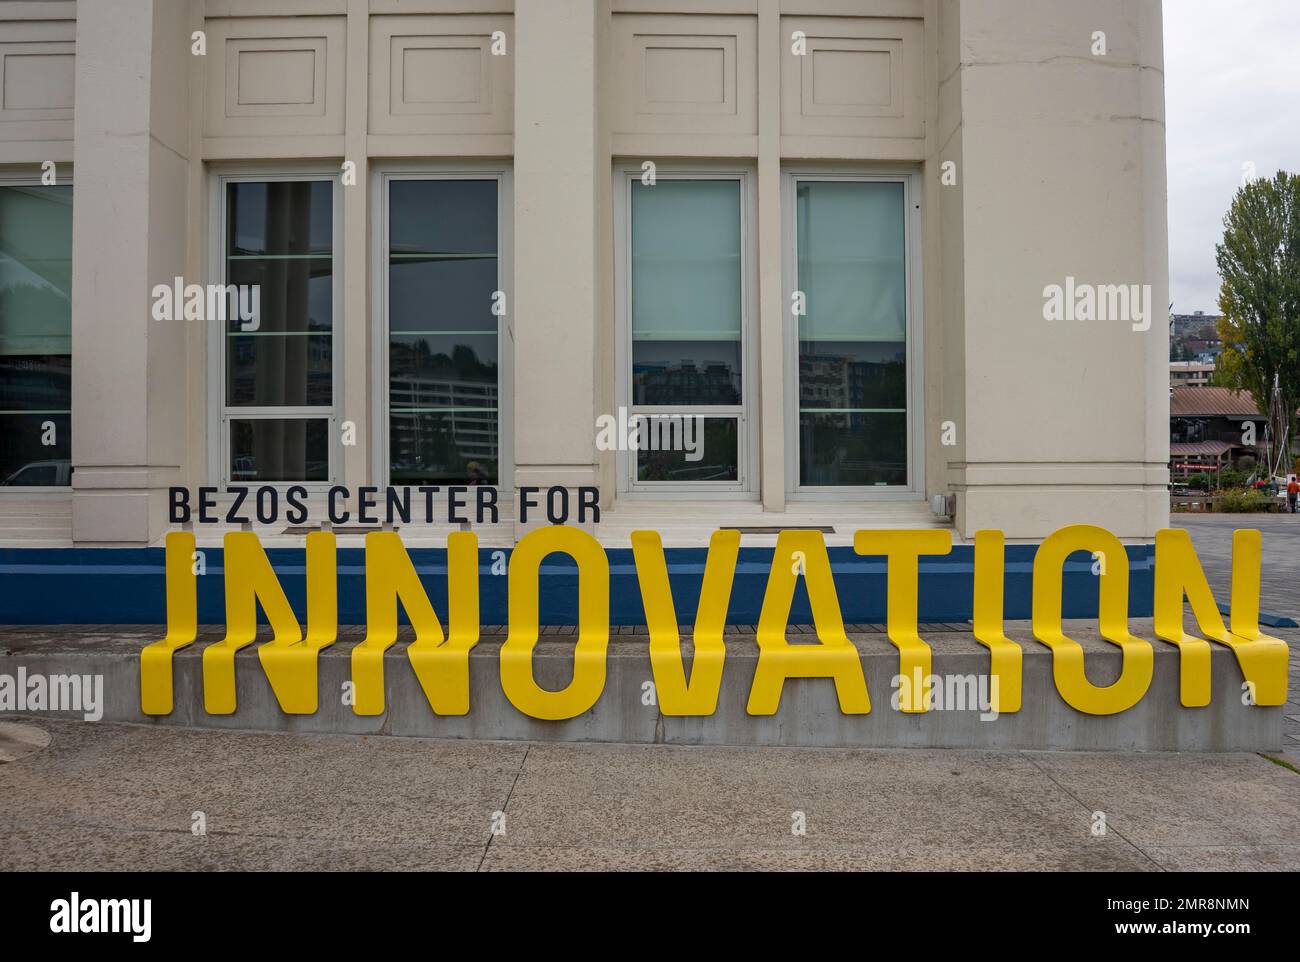 Schriftzug auf einer Gebäudefassade, Bezos Center for Innovation, Seattle, Washington, USA, Nordamerika Stockfoto